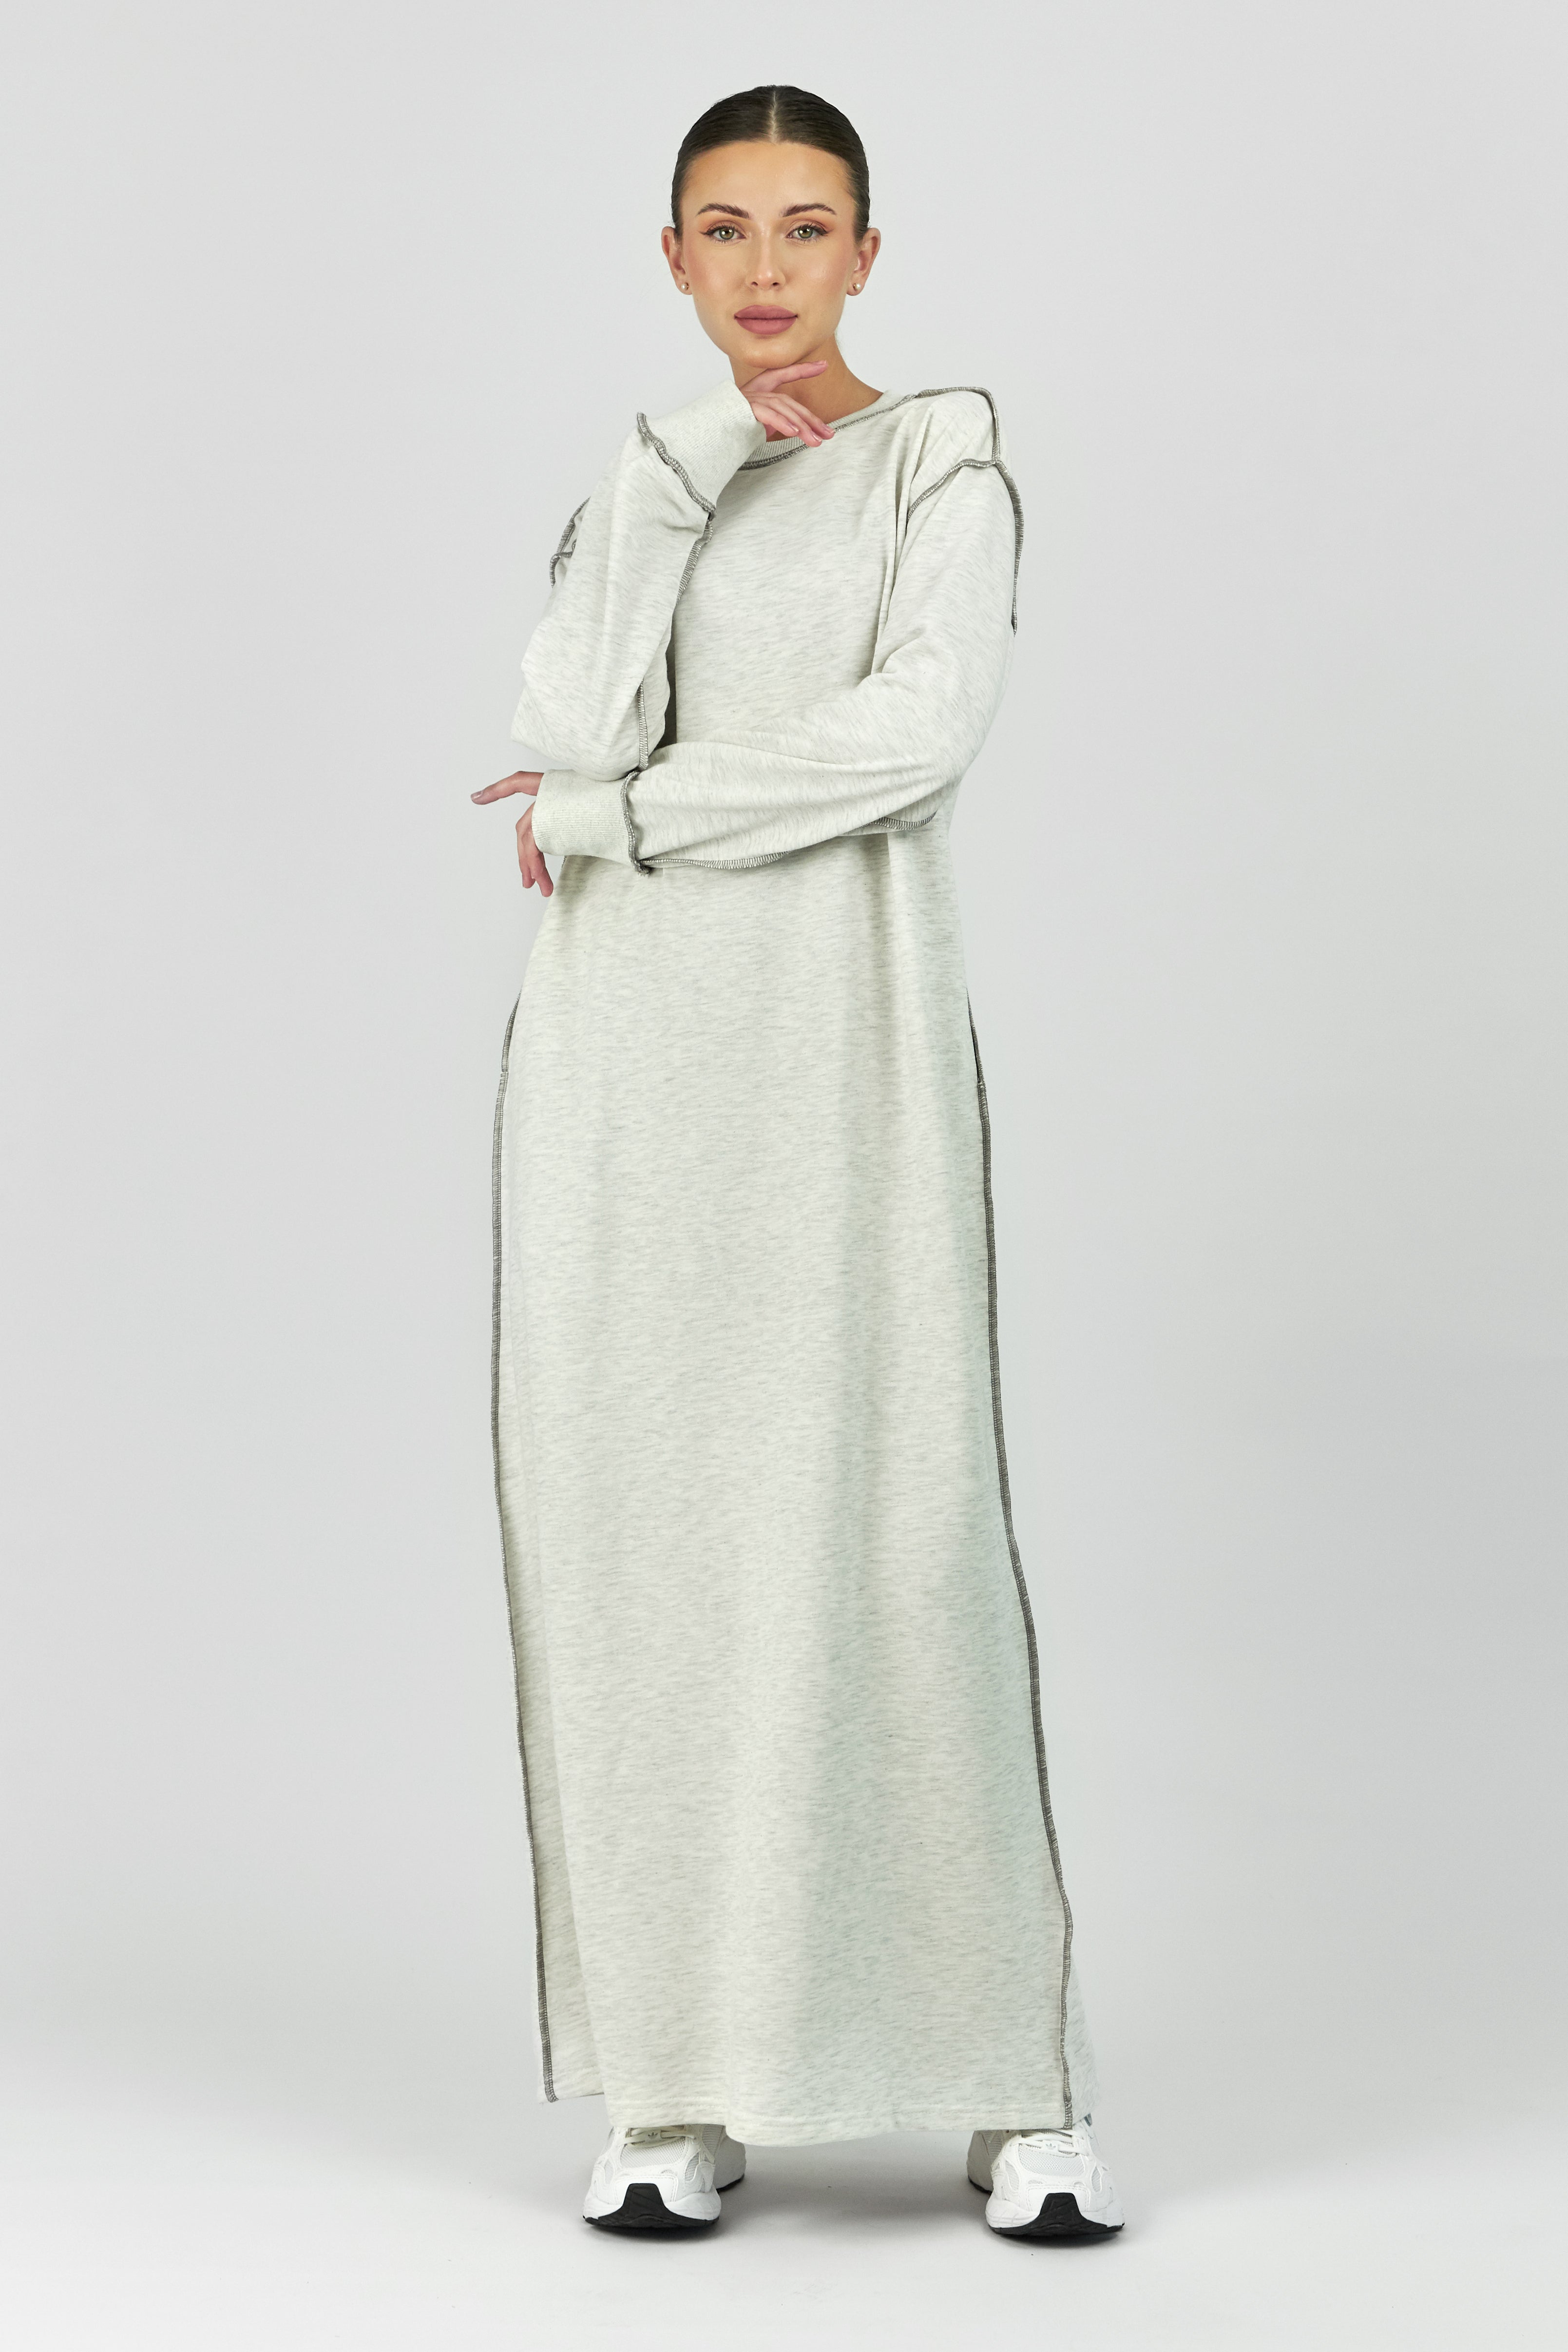 CA - Contrast Stitch Dress - Warm Grey